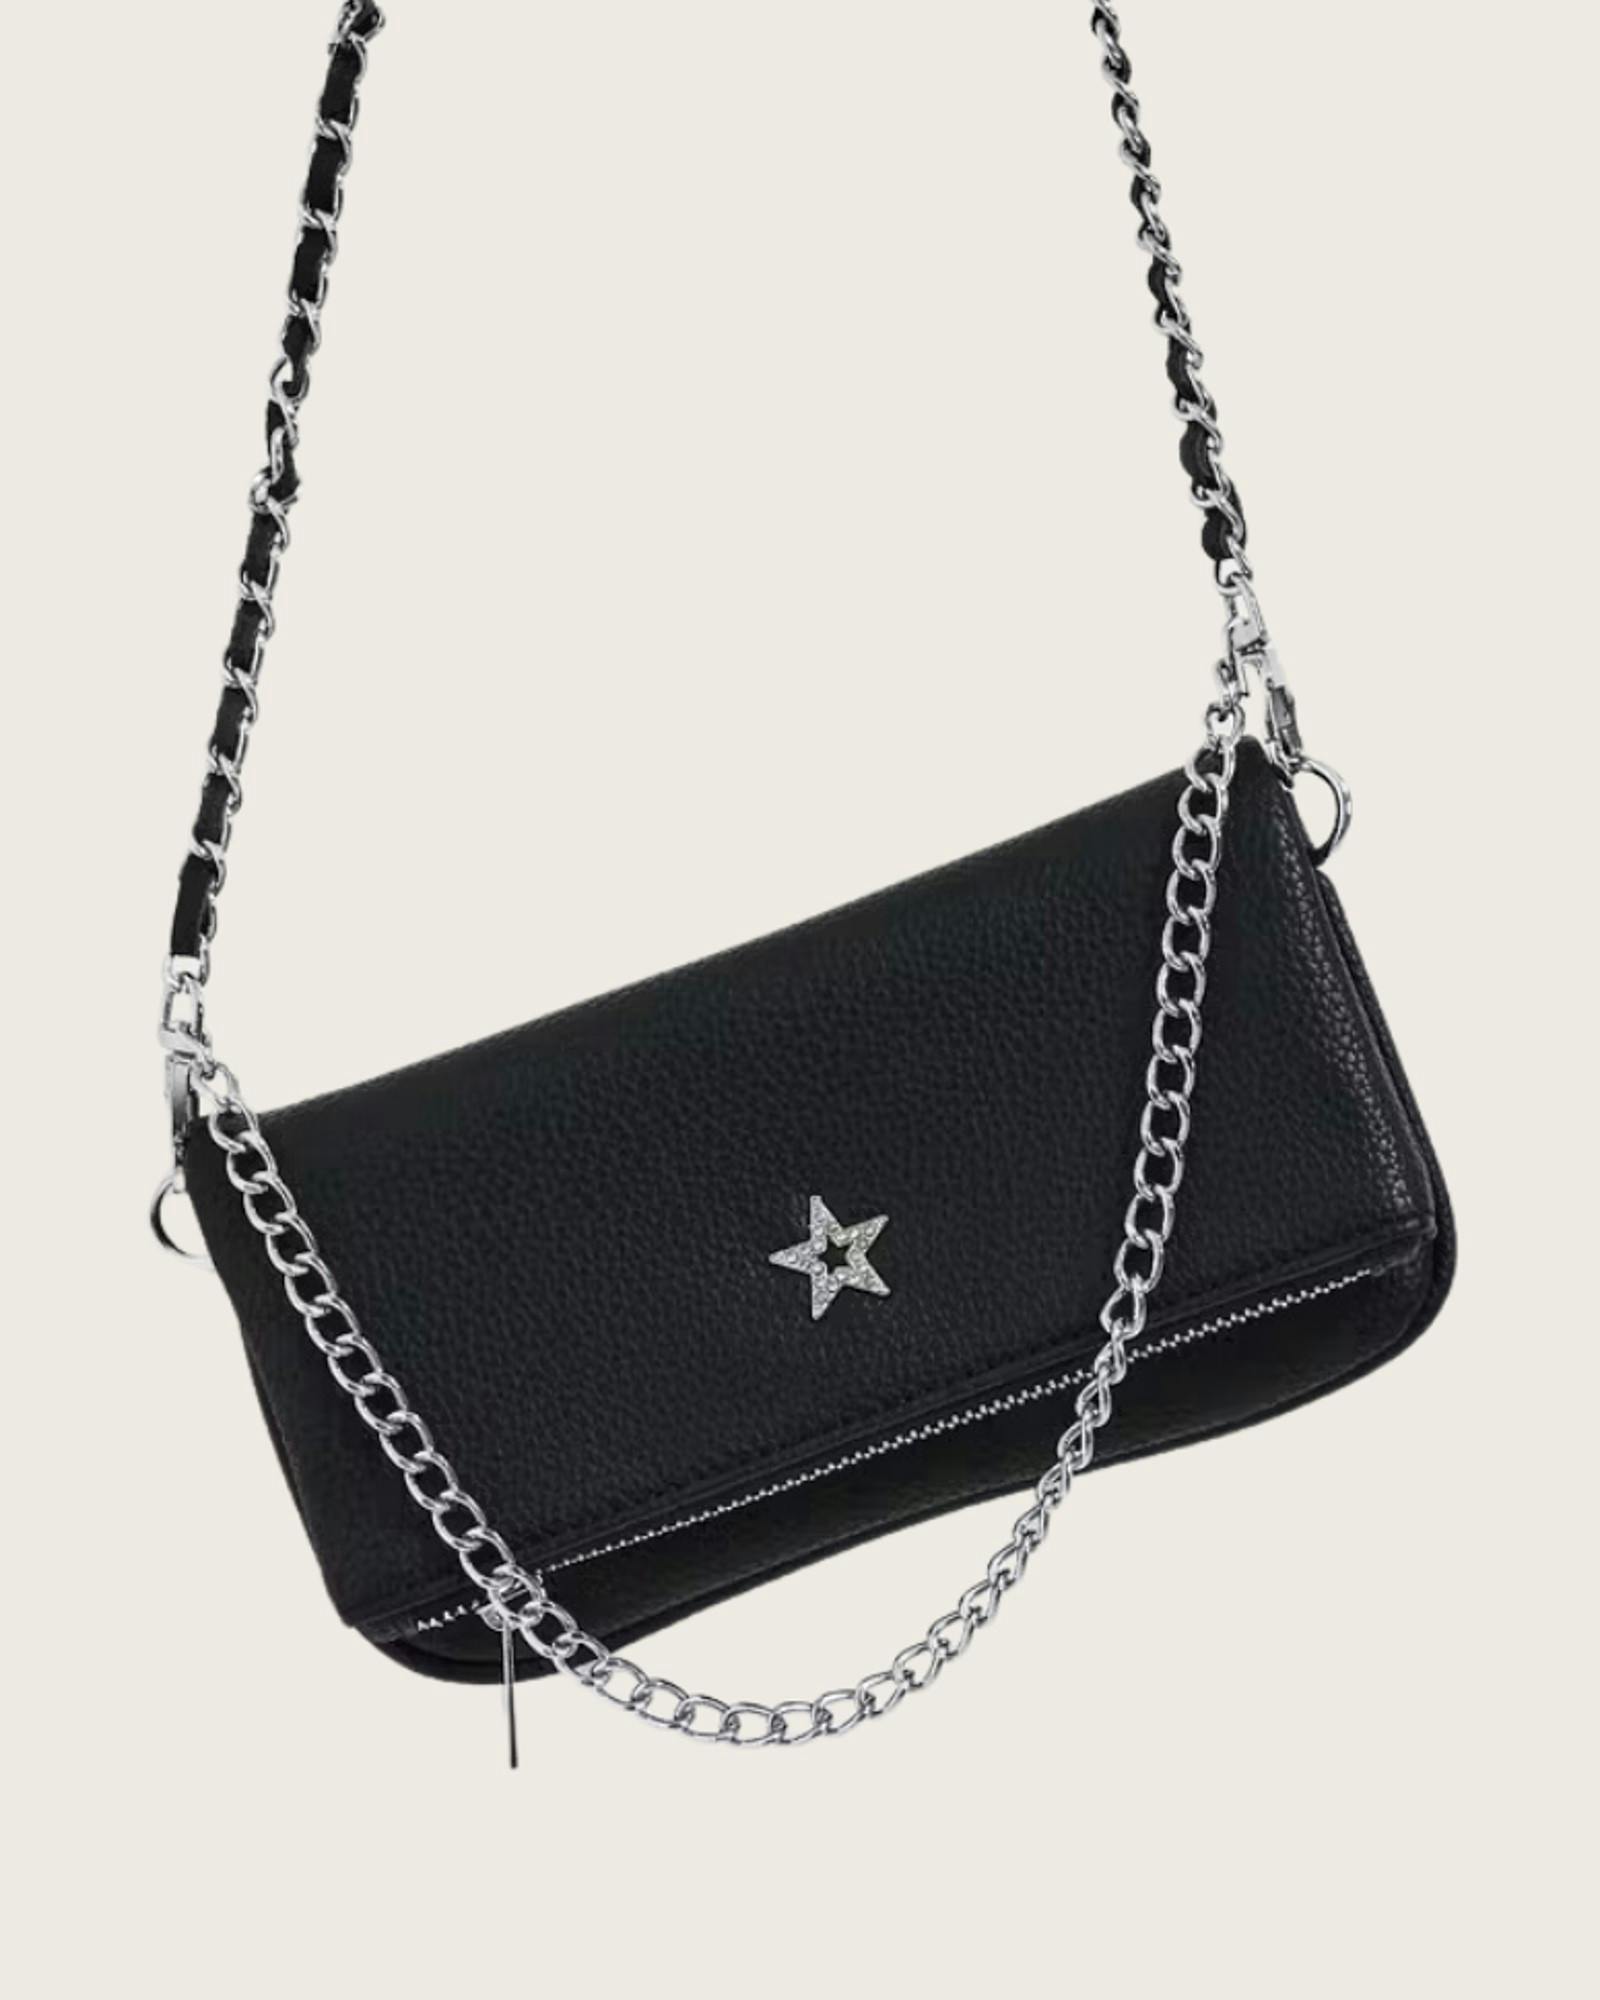 Y star chain bag